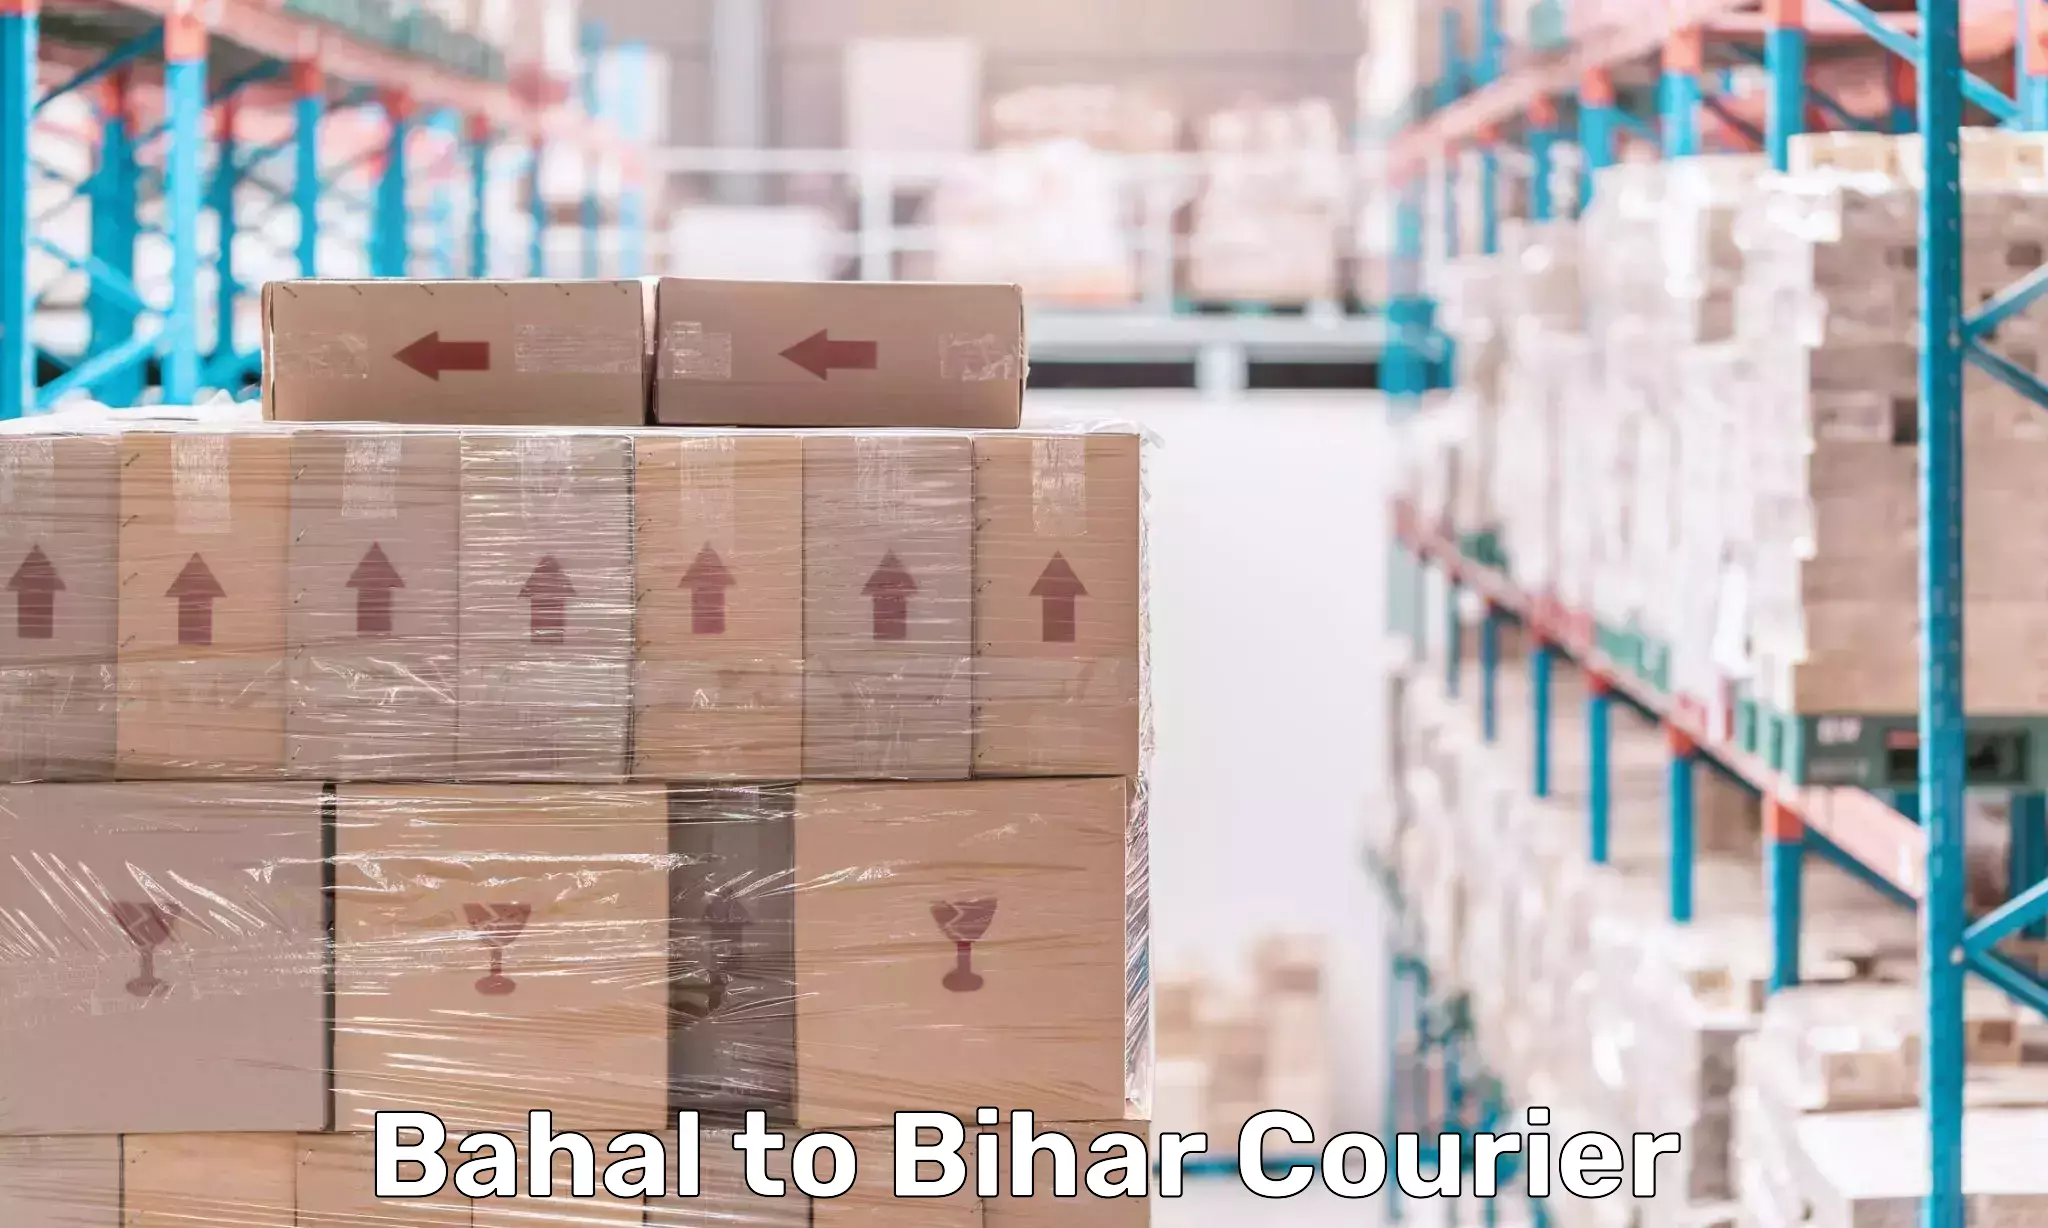 Courier app Bahal to Bihar